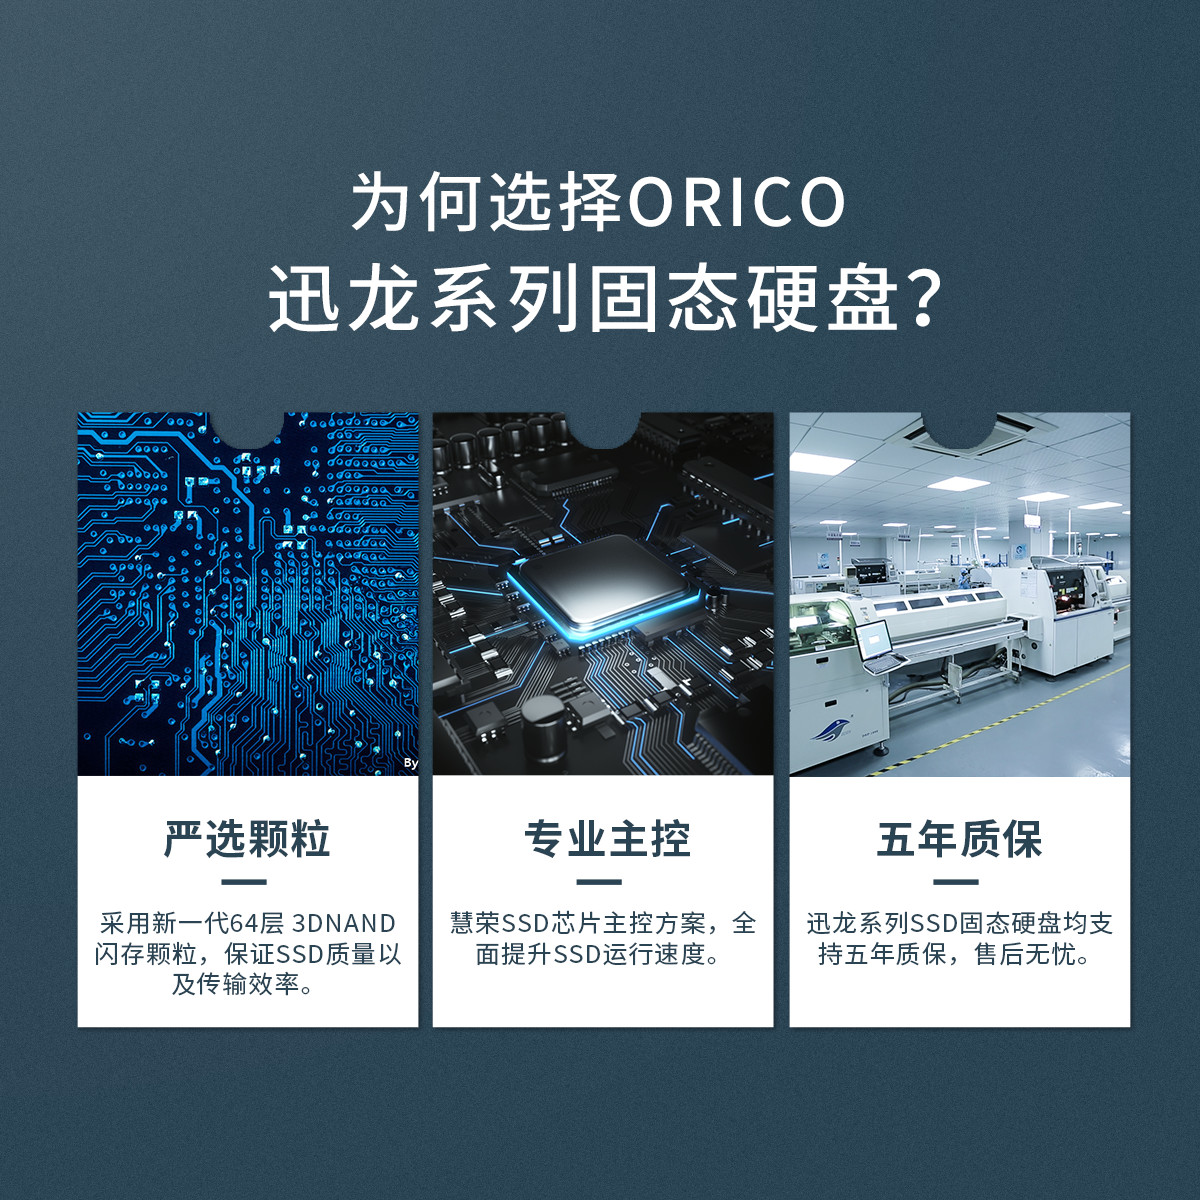 Orico 迅龙固态硬盘支持五年质保，售后无忧